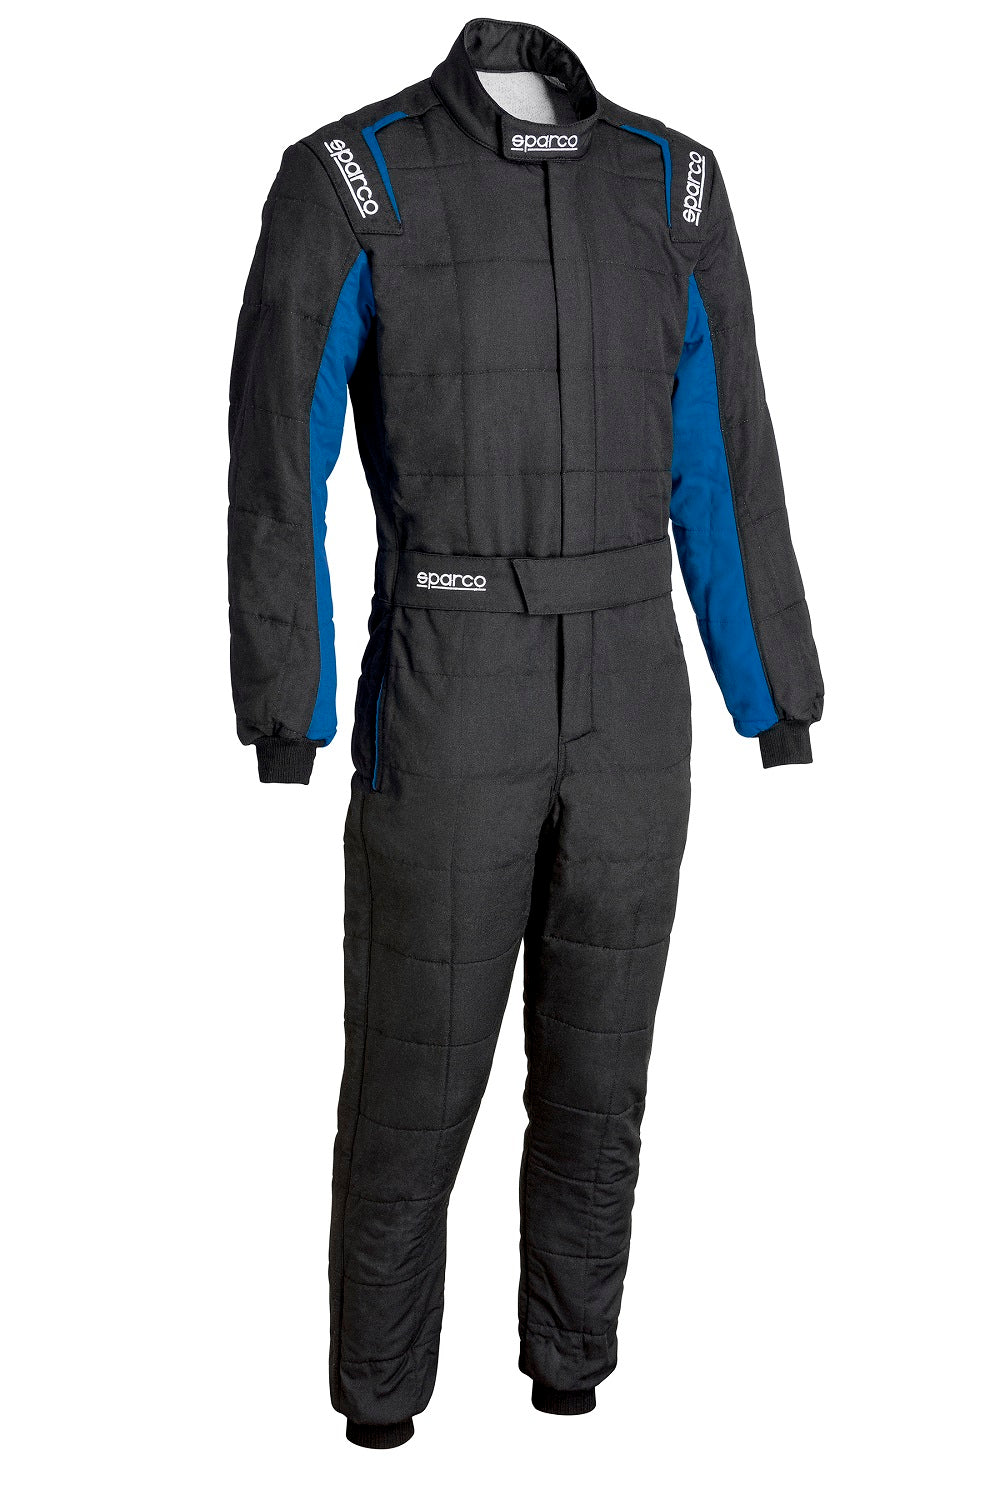 Sparco Conquest 3.0 Race Suit Black / Blue Front Image